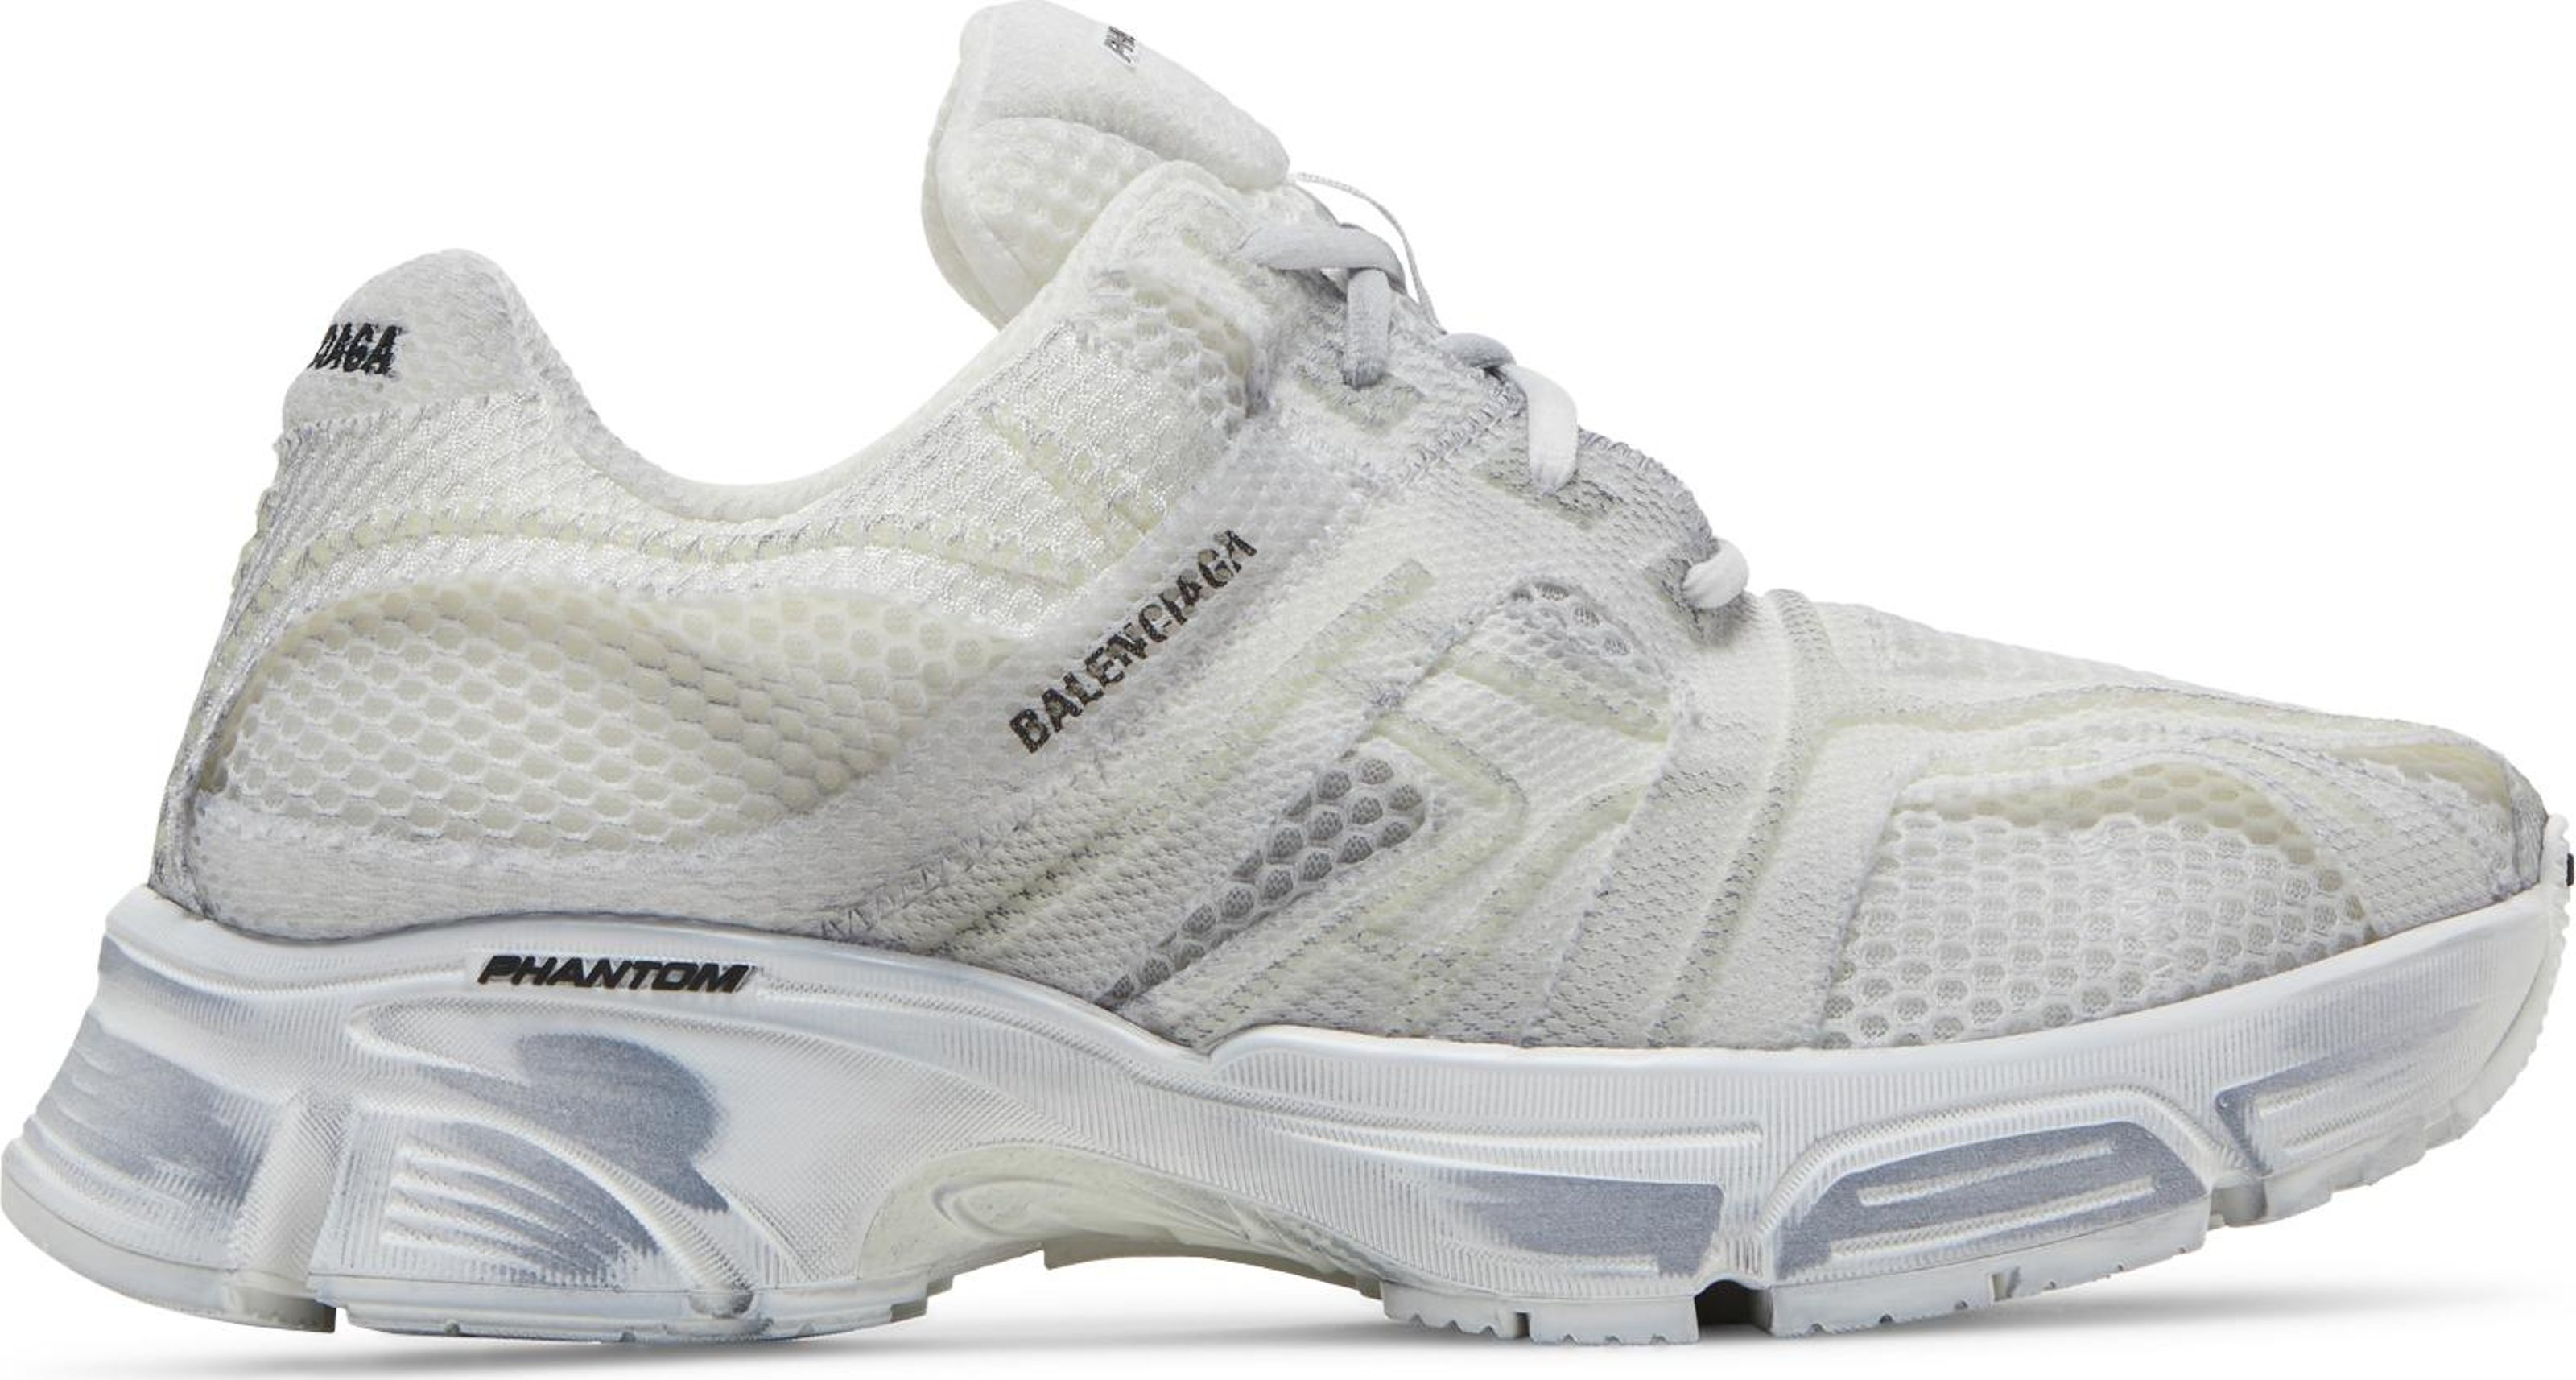 Buy Balenciaga Phantom Sneaker 'White' - 678869 W2E90 9000 - White | GOAT